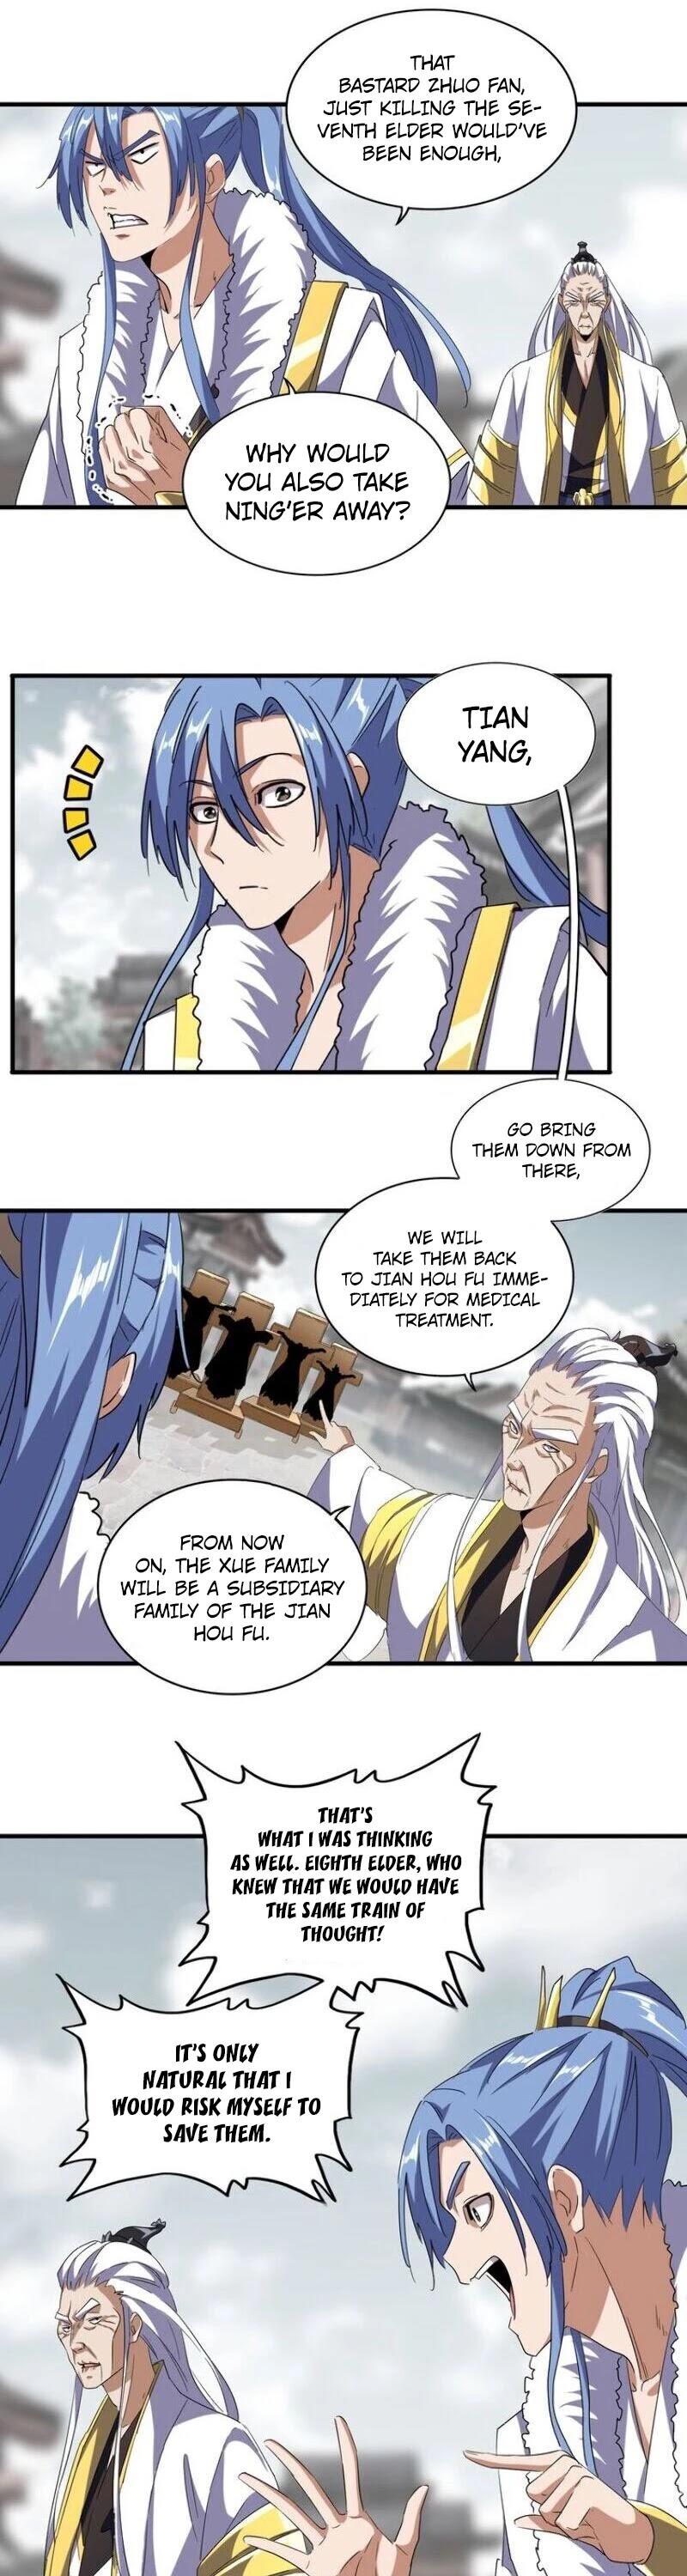 Magic Emperor Chapter 100 page 11 - Mangakakalot